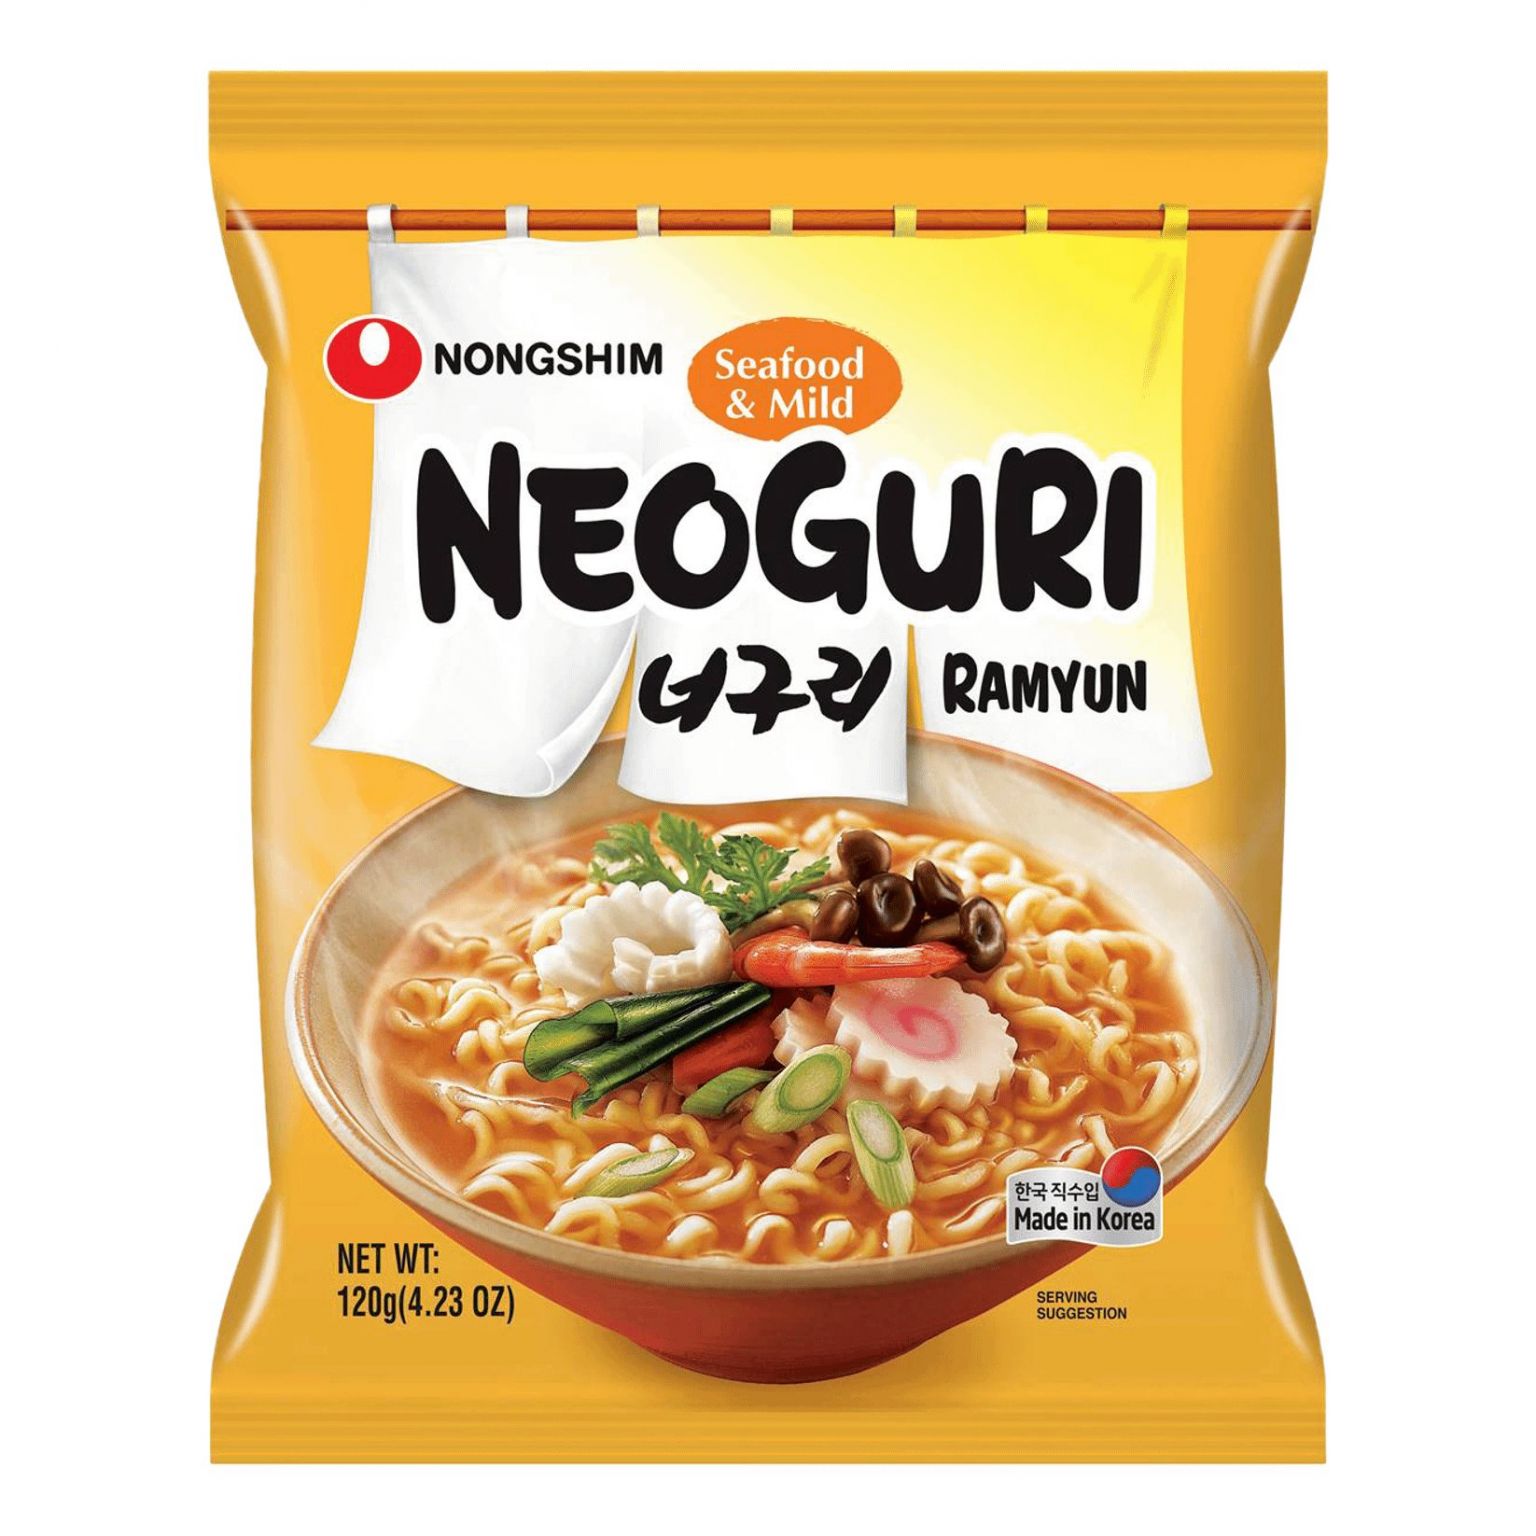 Корейская лапша "Neoguri Ramyun" со вкусом морепродуктов в корейском стиле NONG SHIM.